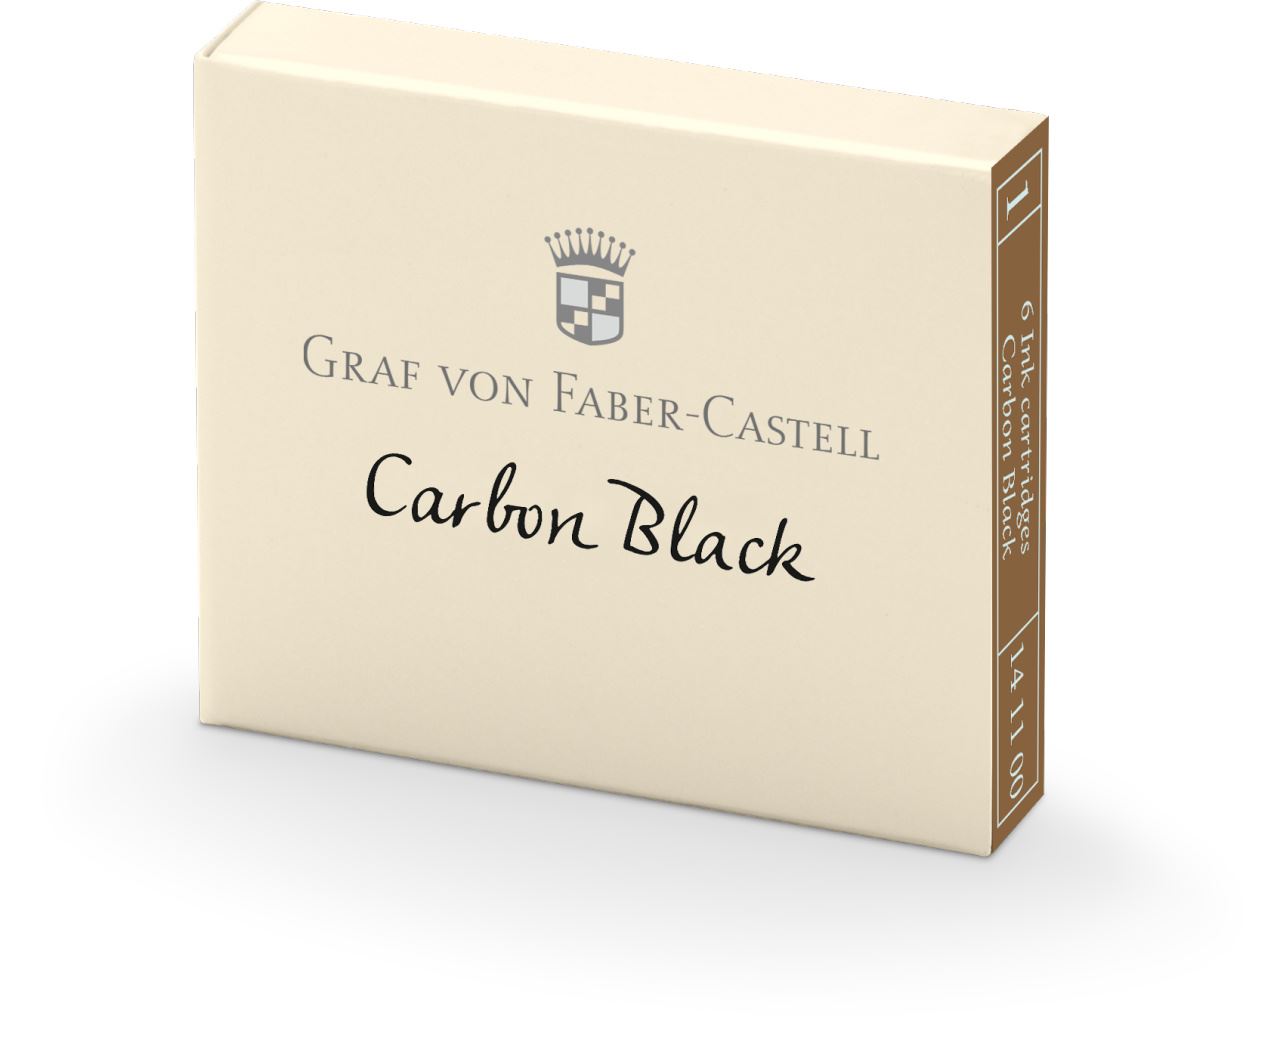 Graf-von-Faber-Castell - 6 cartouches, Noir Carbone